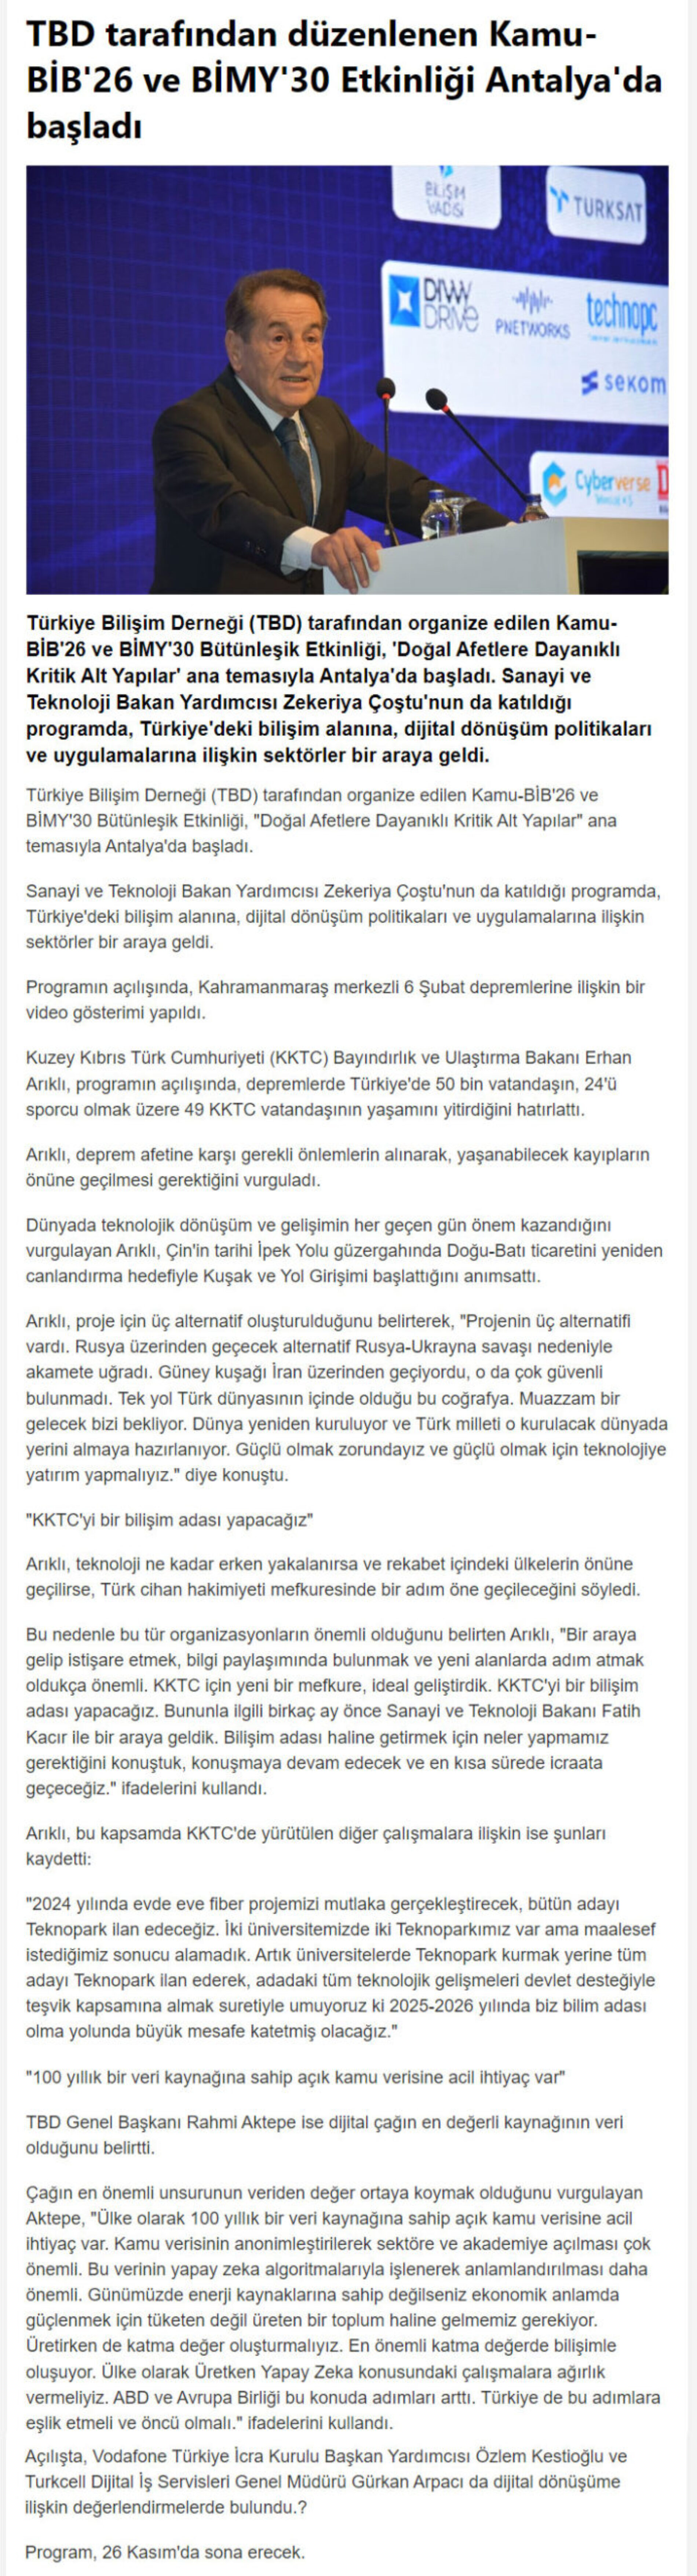 TBD Tarafından Düzenlenen Kamu-BİB’26 ve BİMY’30 Etkinliği Antalya’da Başladı – HABERLER.COM